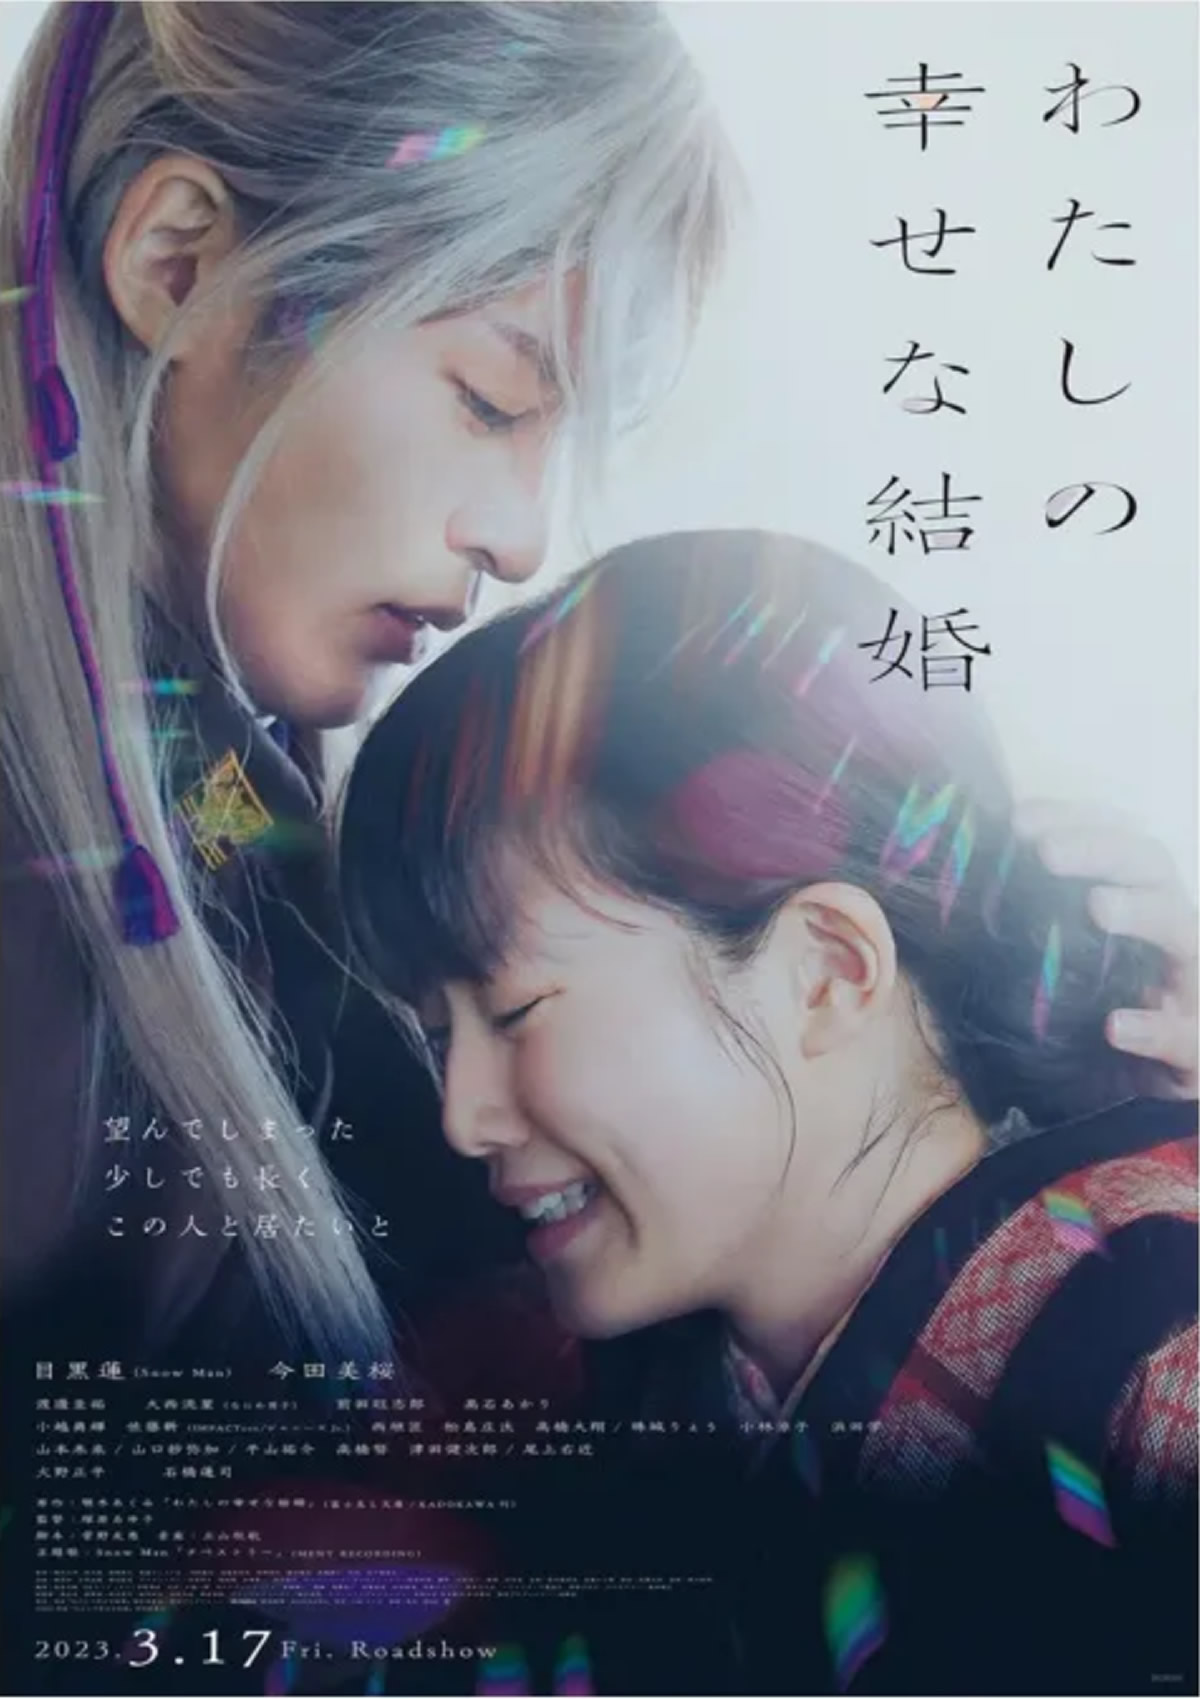  目黒蓮（Snow Man）×今田美桜 映画「わたしの幸せな結婚」、タイで2023年6月22日より劇場公開